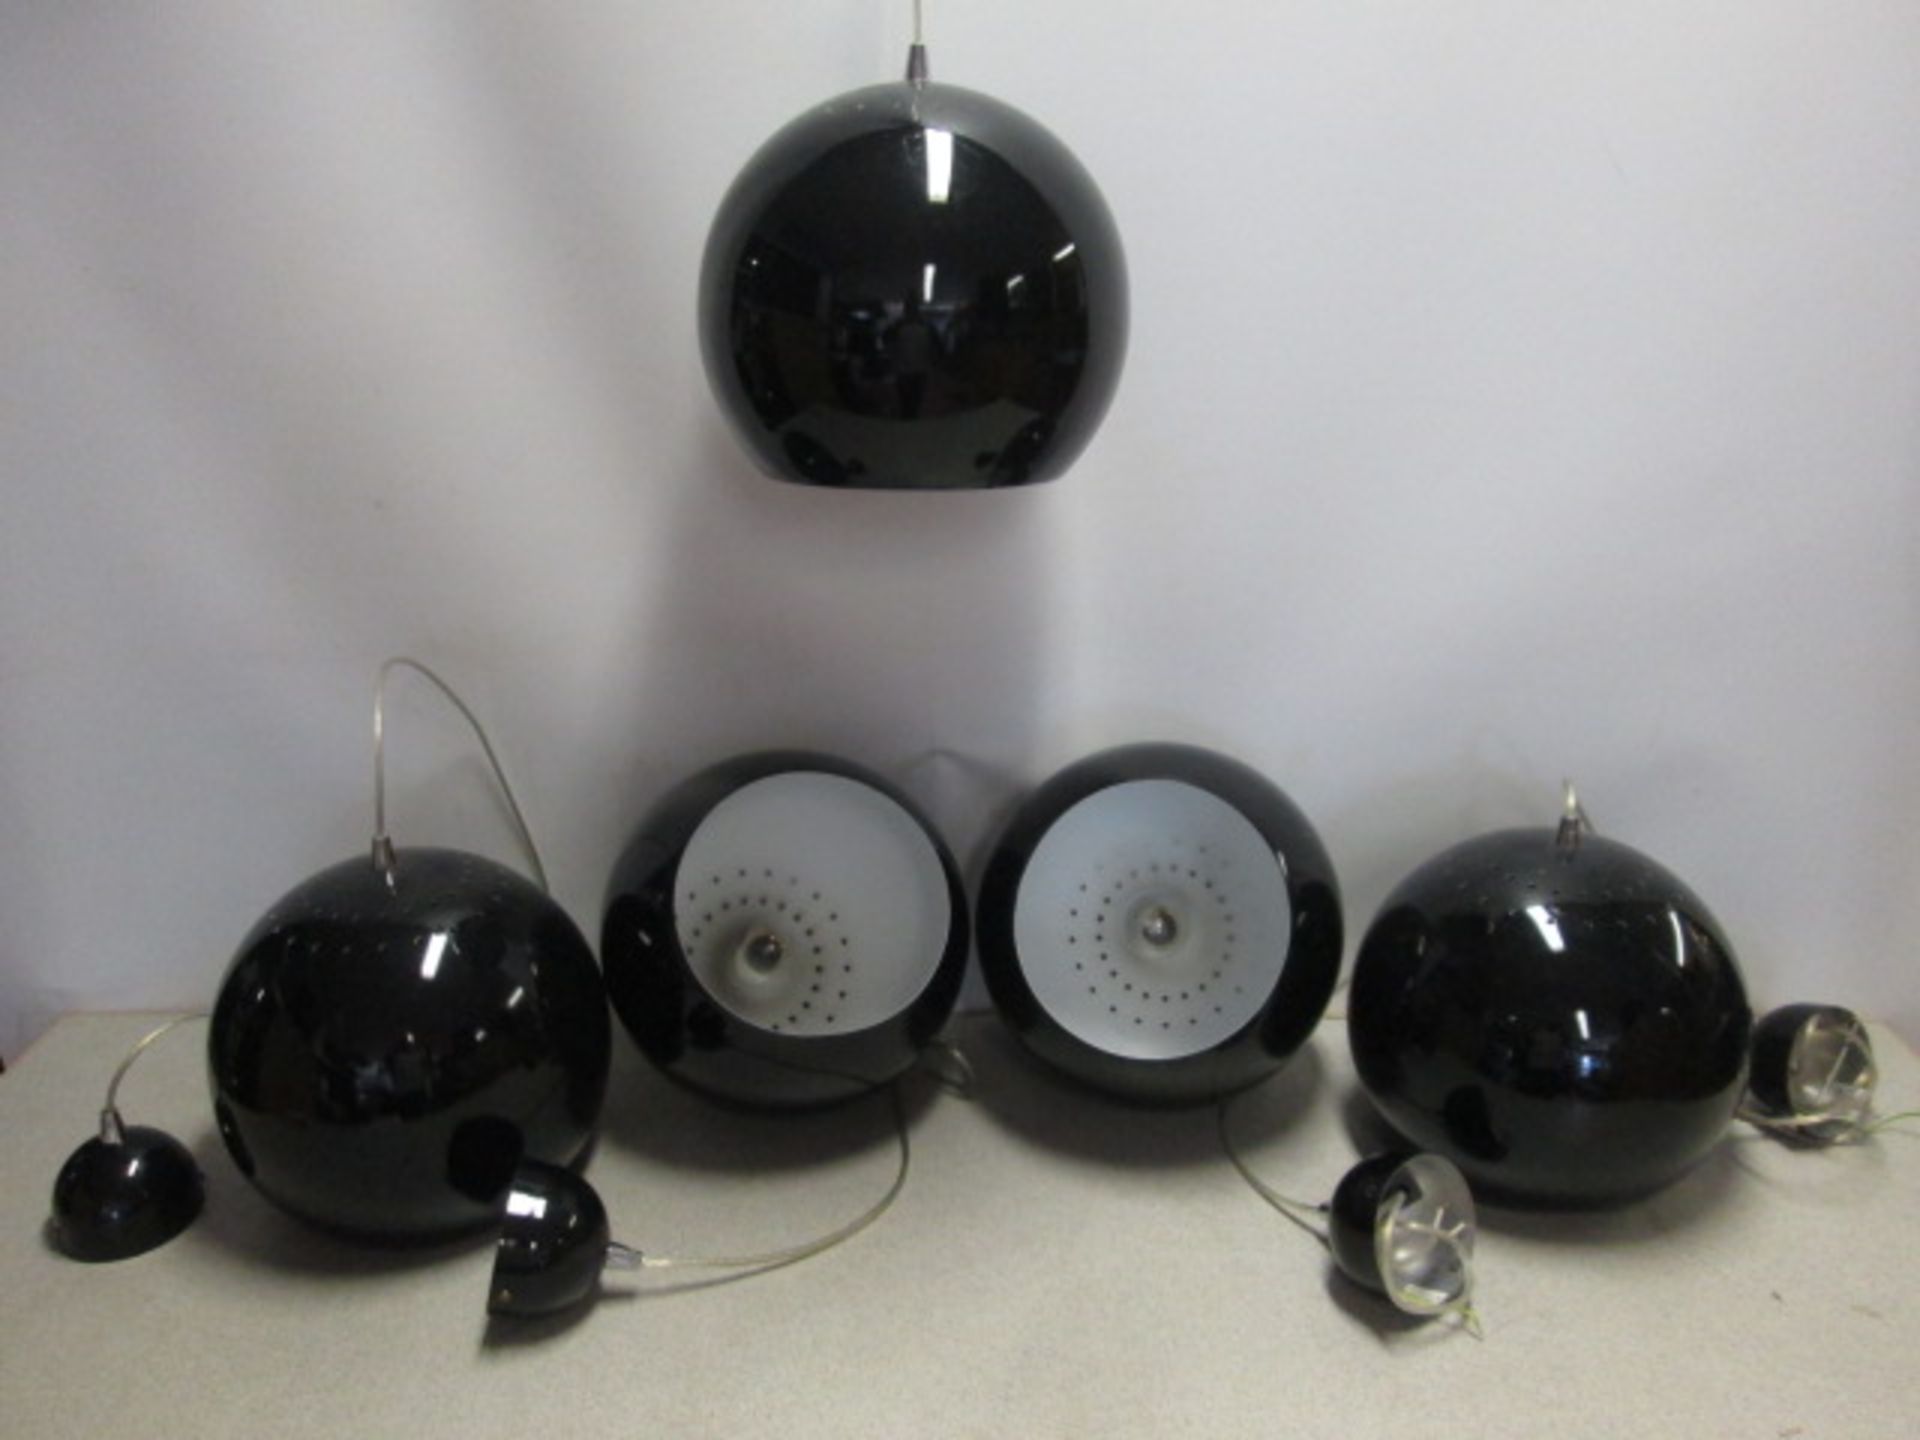 15 x Leitmotive Pendant Lamp Ceiling Lights, Aluminium, Black. Size Diameter 25cm